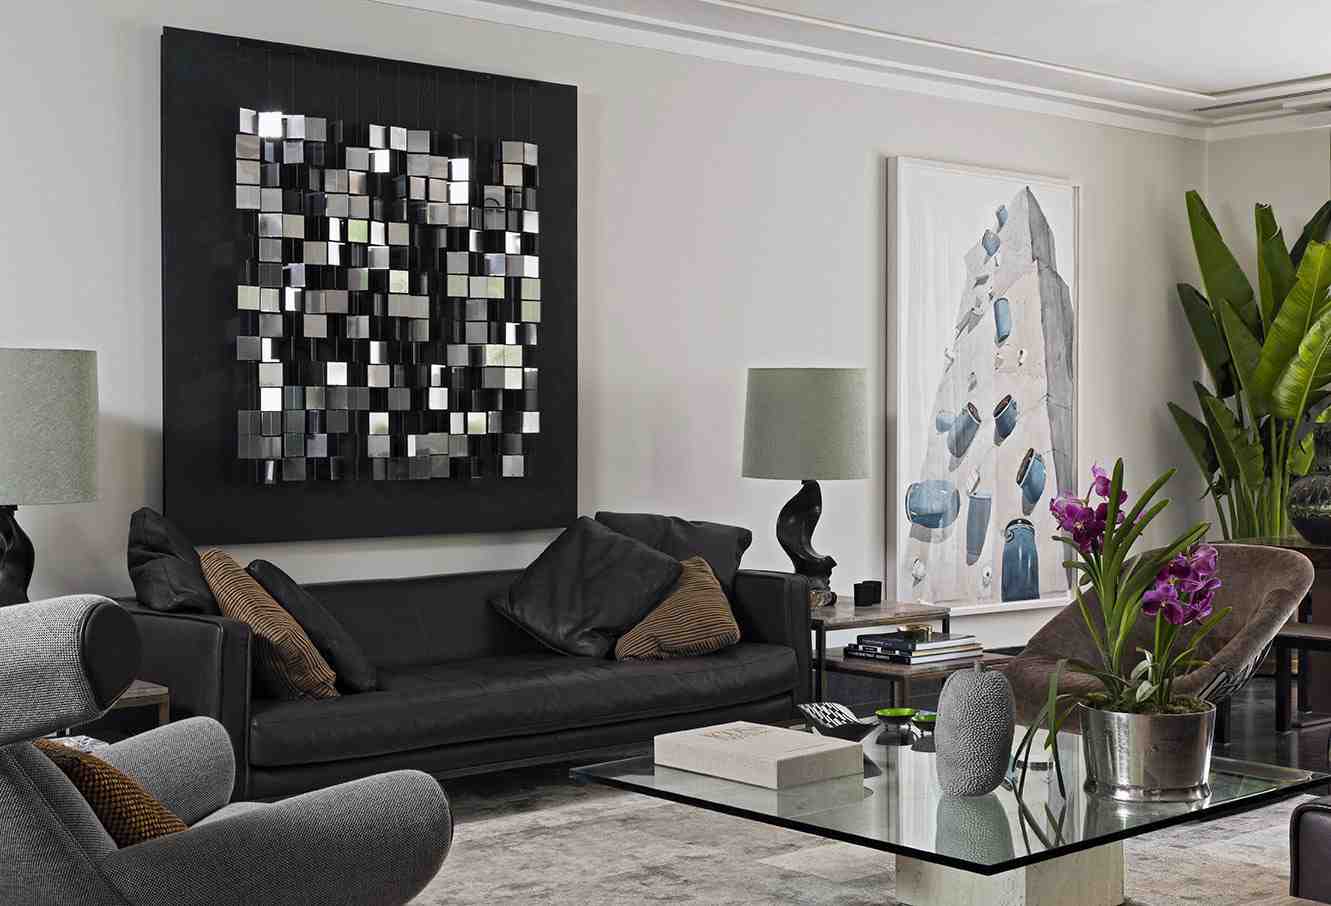 Living Room Wall Decor: 5 Options - Decor IdeasDecor Ideas